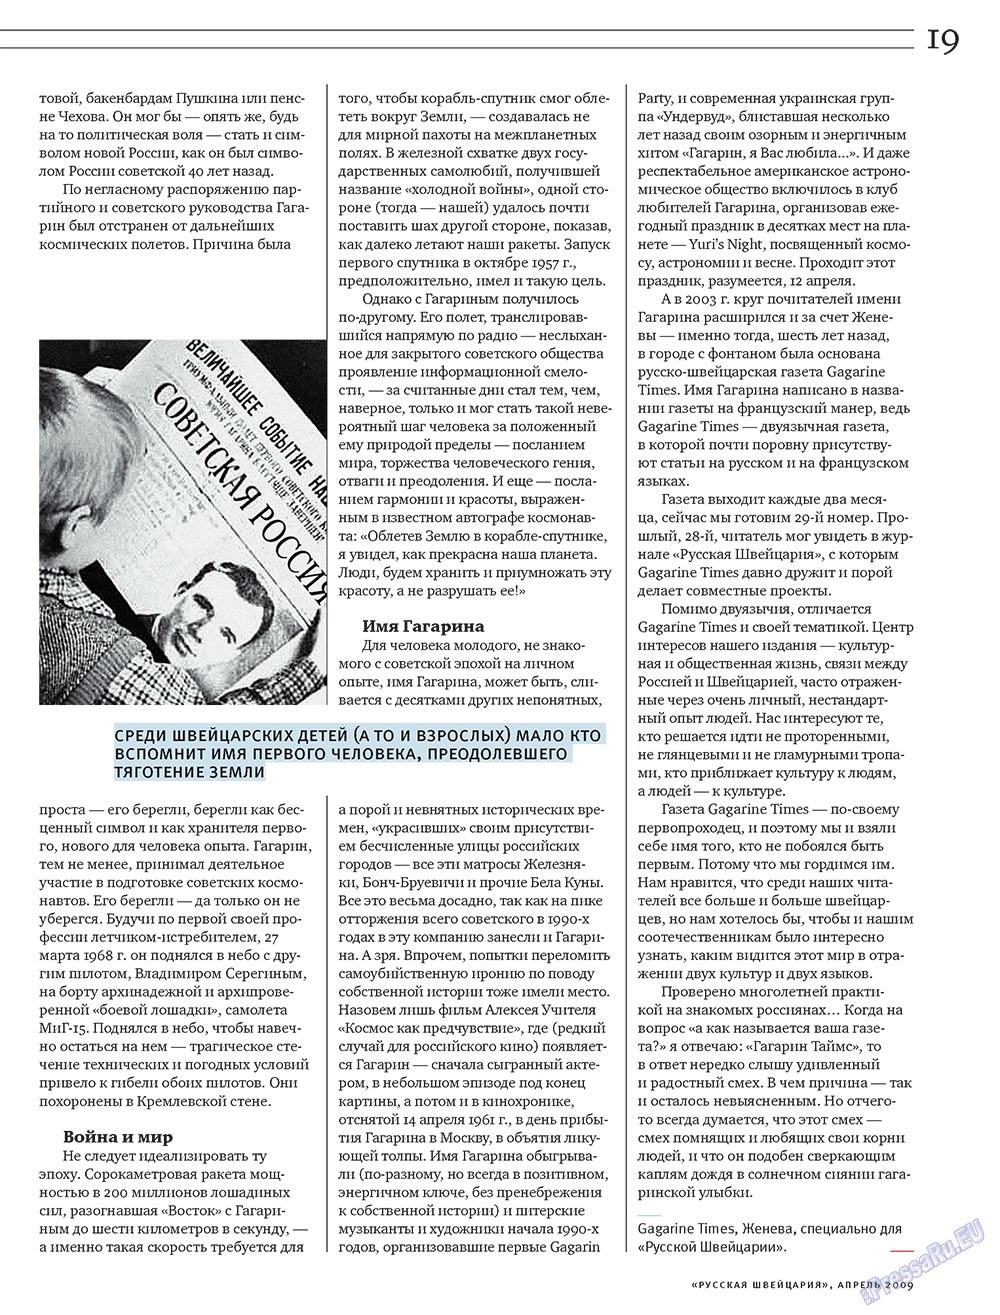 Русская Швейцария (журнал). 2009 год, номер 4, стр. 19